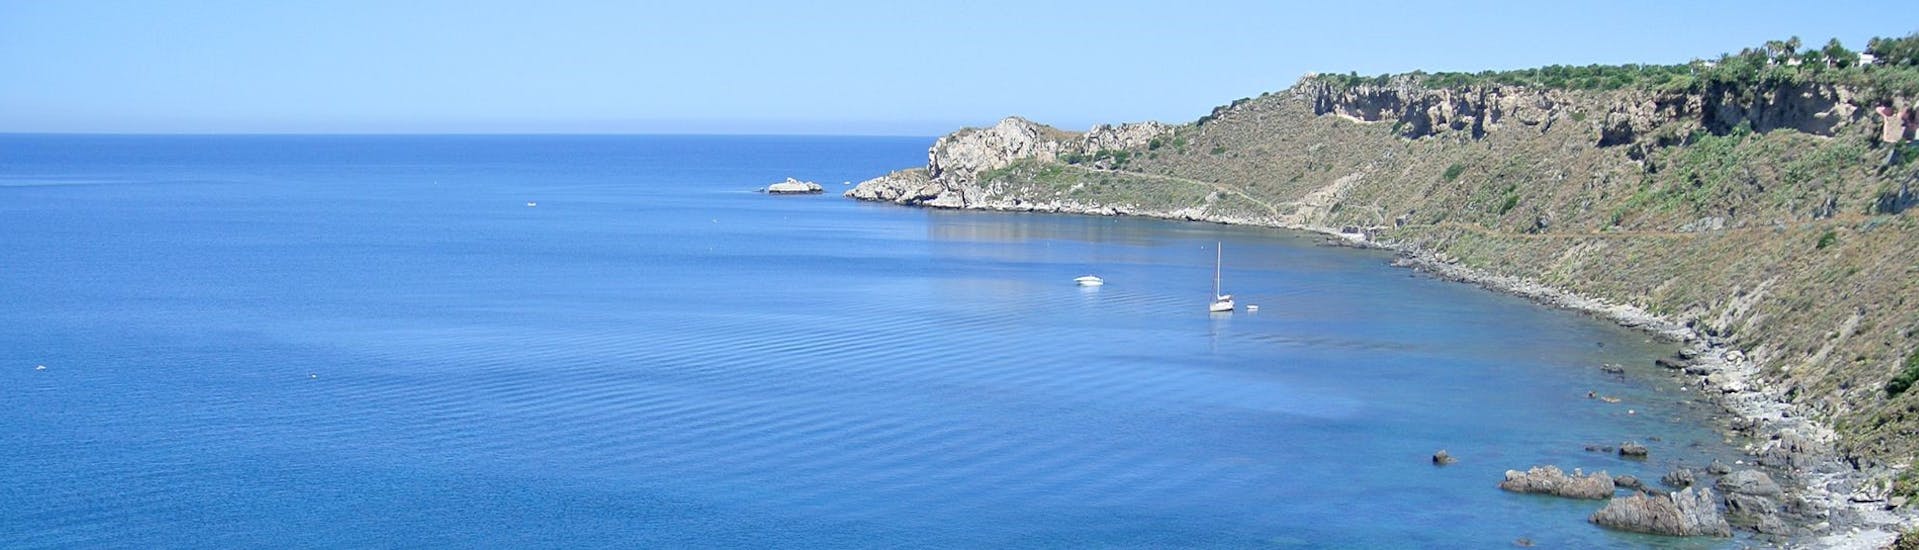 Vista desde el barco de Sky Sea Charter durante el paseo en barco privado desde Milazzo a Vulcano y Lipari.